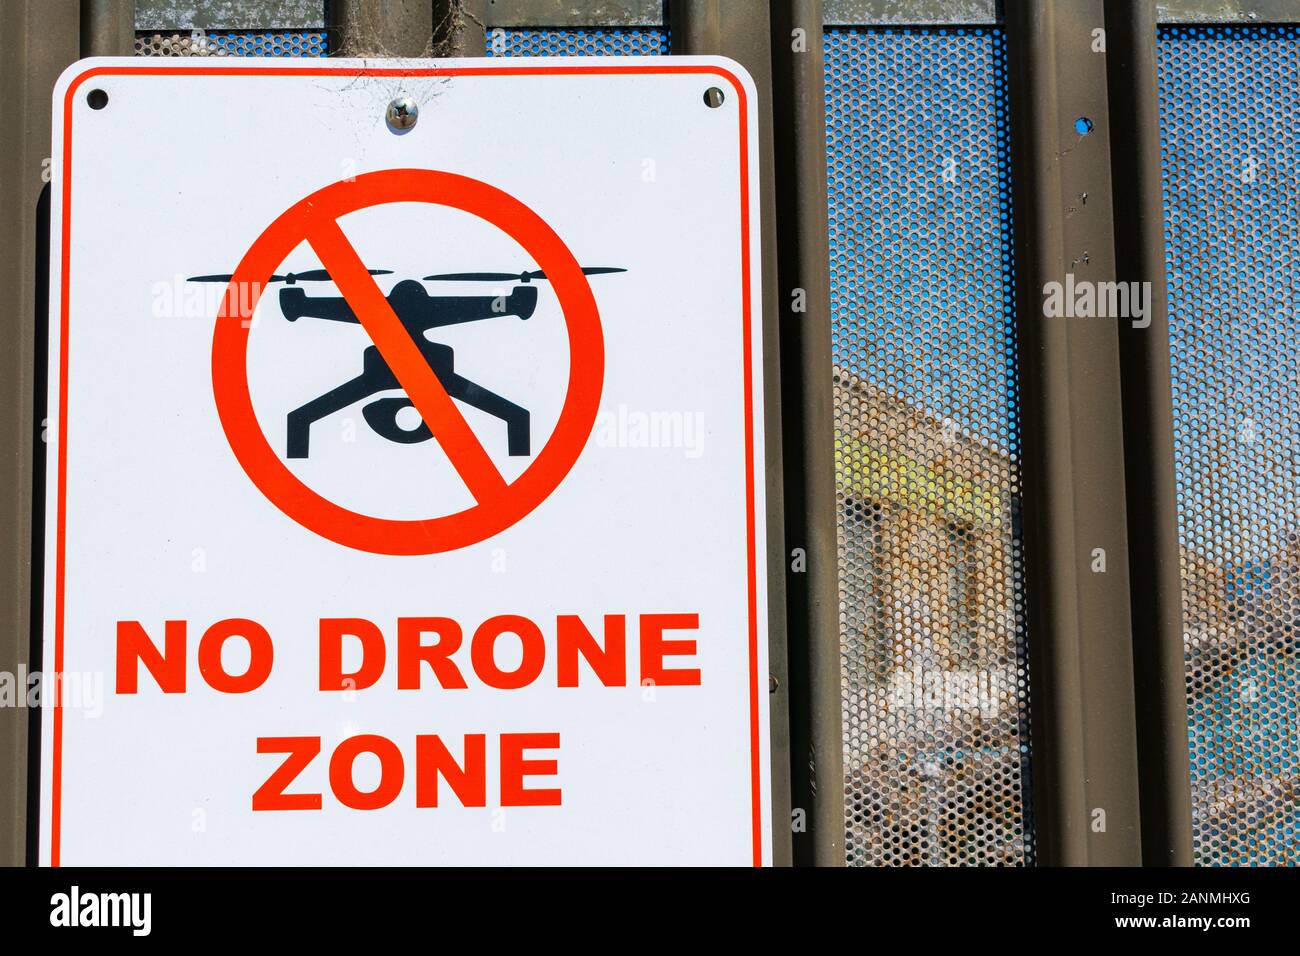 2 X fotografía aérea pegatinas de advertencia de precaución Drone operativos signos grandes 